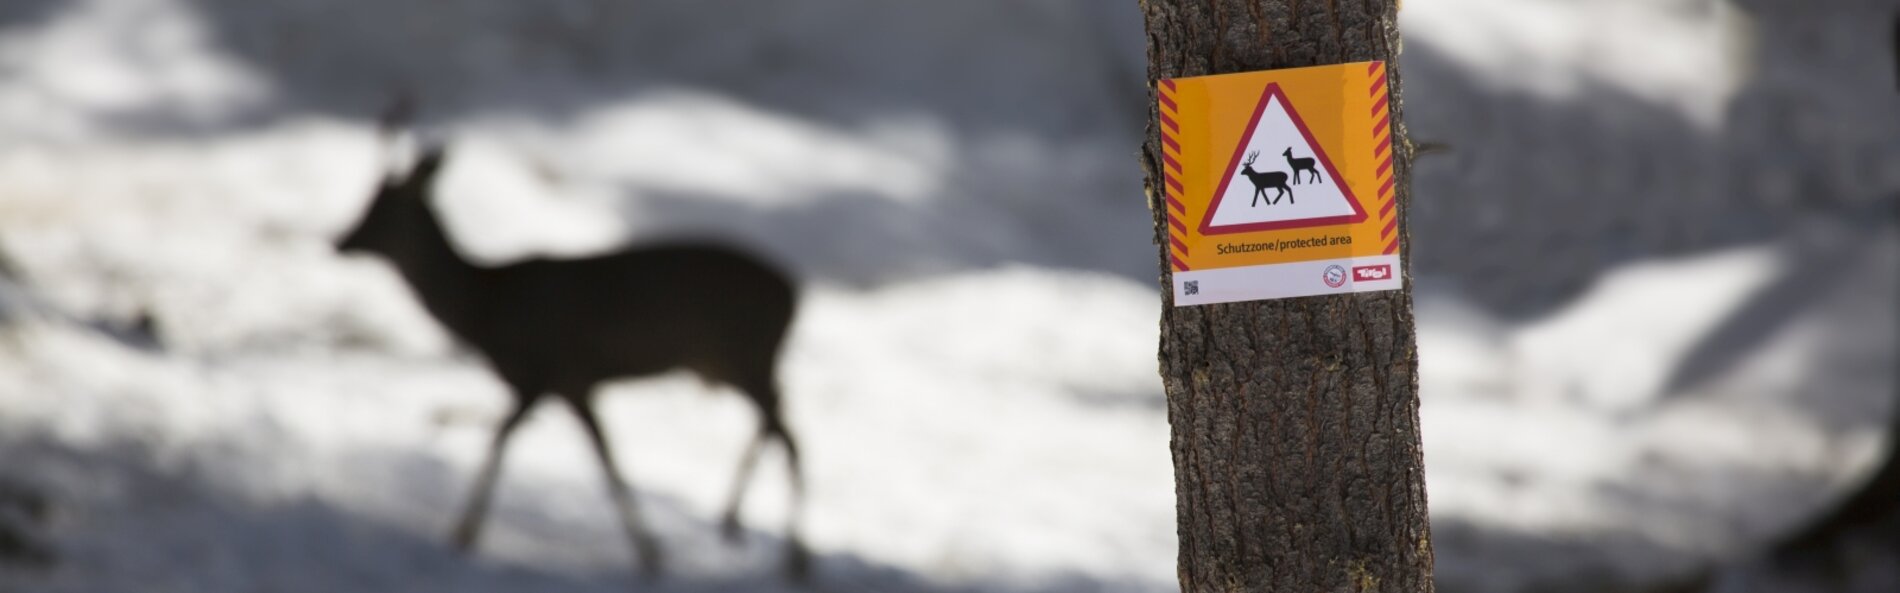 Schutzgüter-Schild an Baum montiert. Im Hintergrund ein Reh im Schnee.